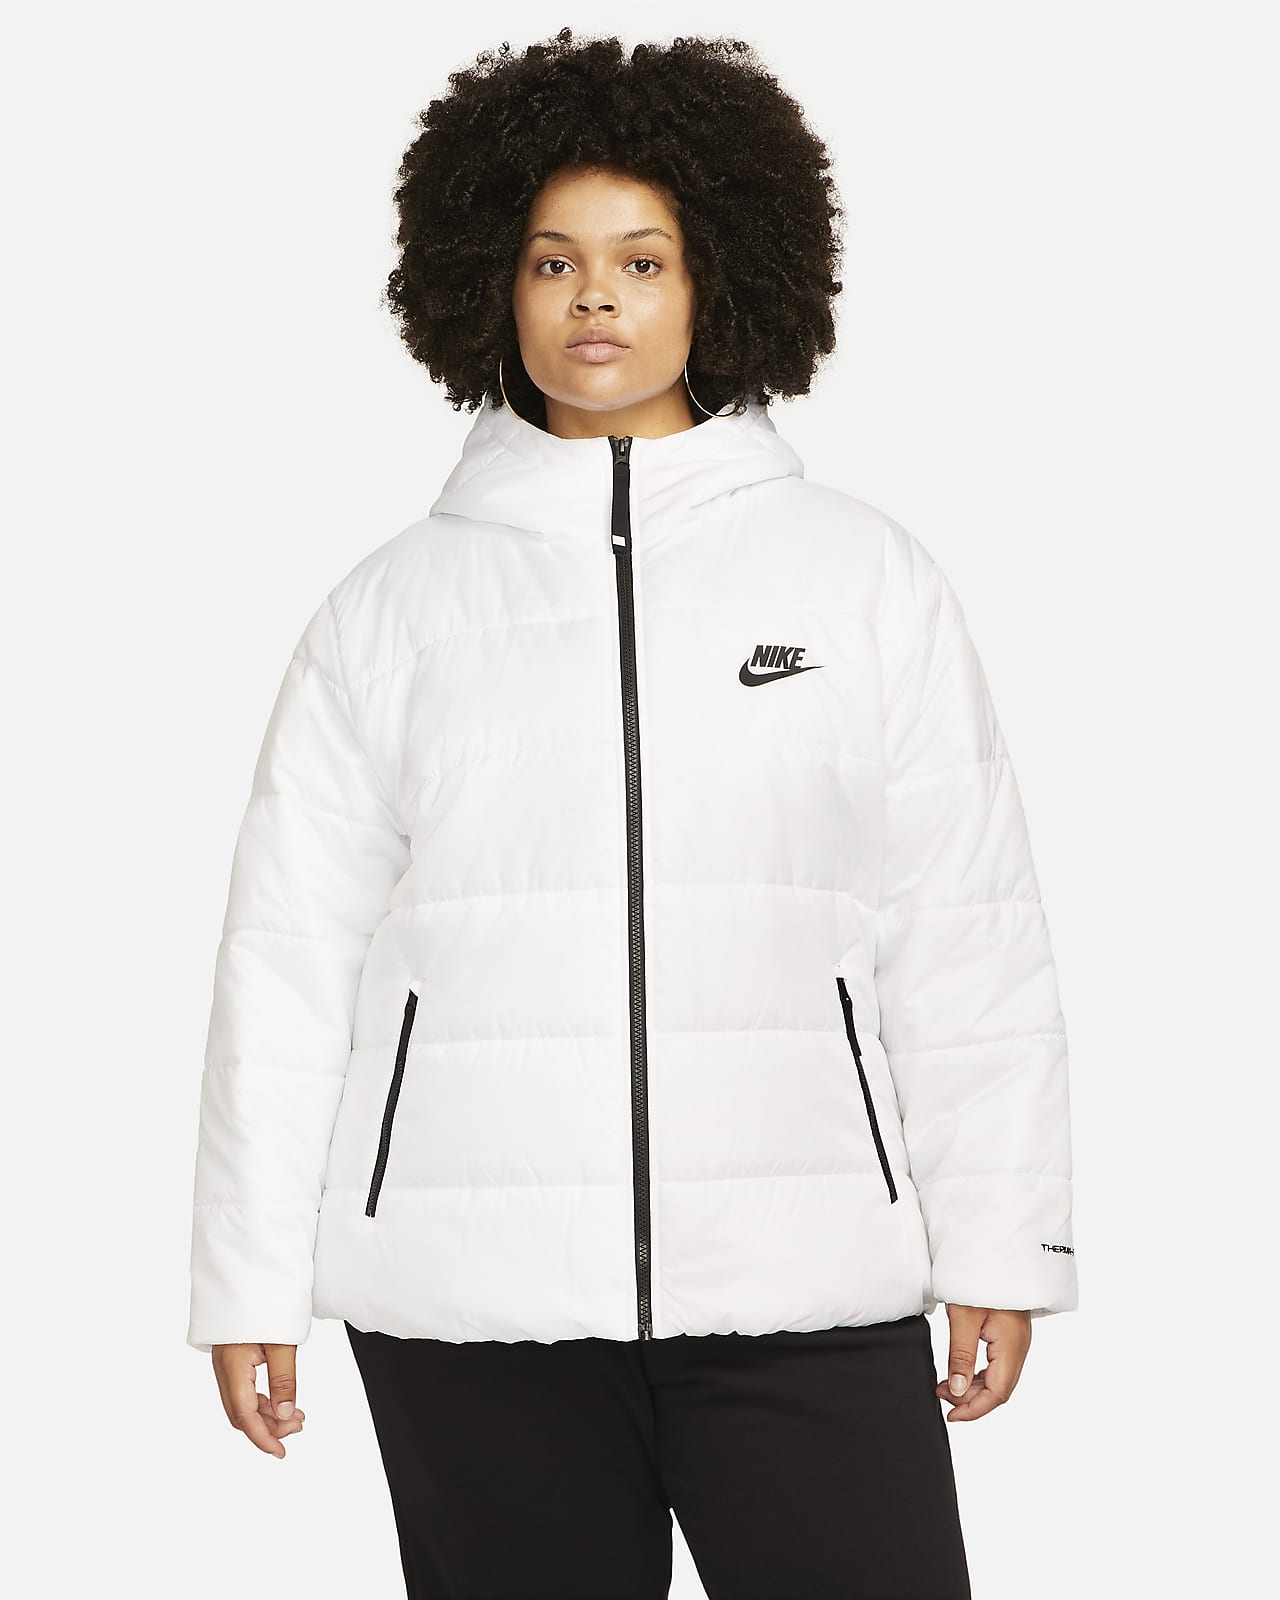 Prelude spiegel Manuscript Nike Sportswear Therma-FIT Repel Women's Jacket (Plus Size). Nike SI